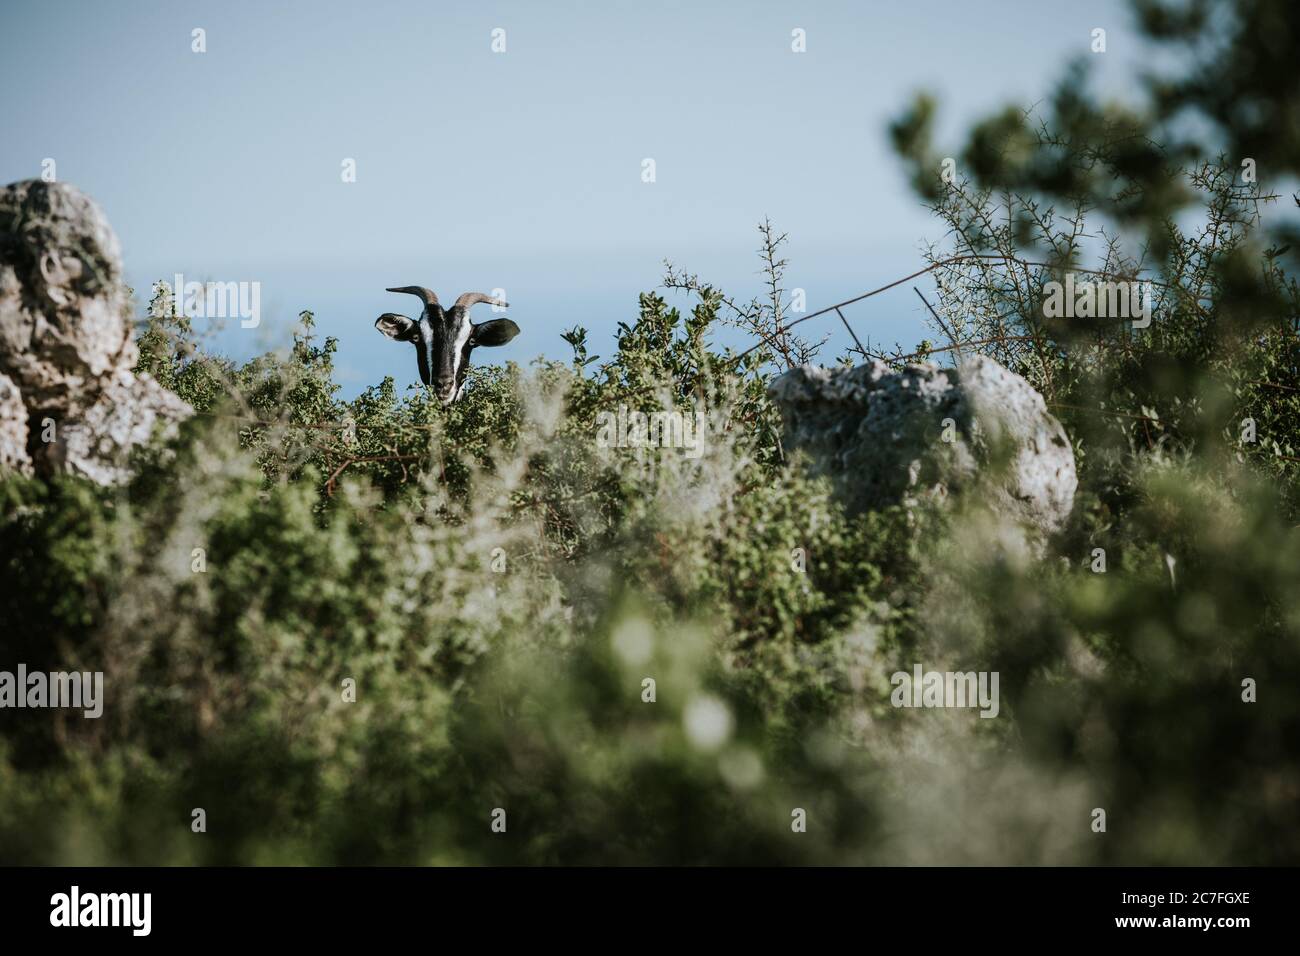 La tête de chèvre cornée cachée, derrière le Bush sur l'éco-ferme de l'île grecque de Zakynthos pendant la journée ensoleillée d'été Banque D'Images